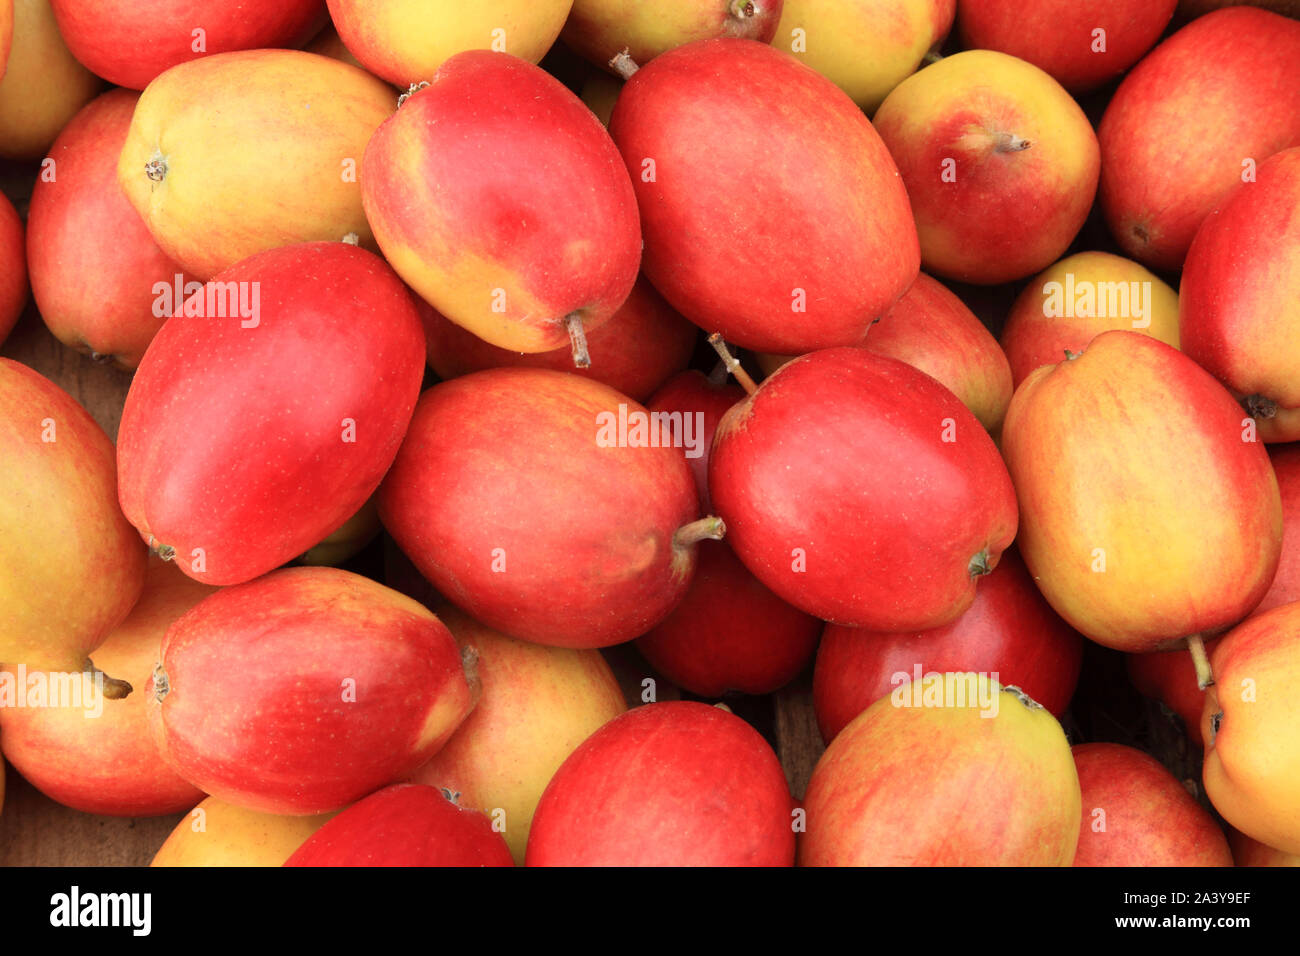 'Apple' Pin Chêne, pommes, manger des pommes, des mangemorts, de la saine alimentation, Malus domestica Banque D'Images